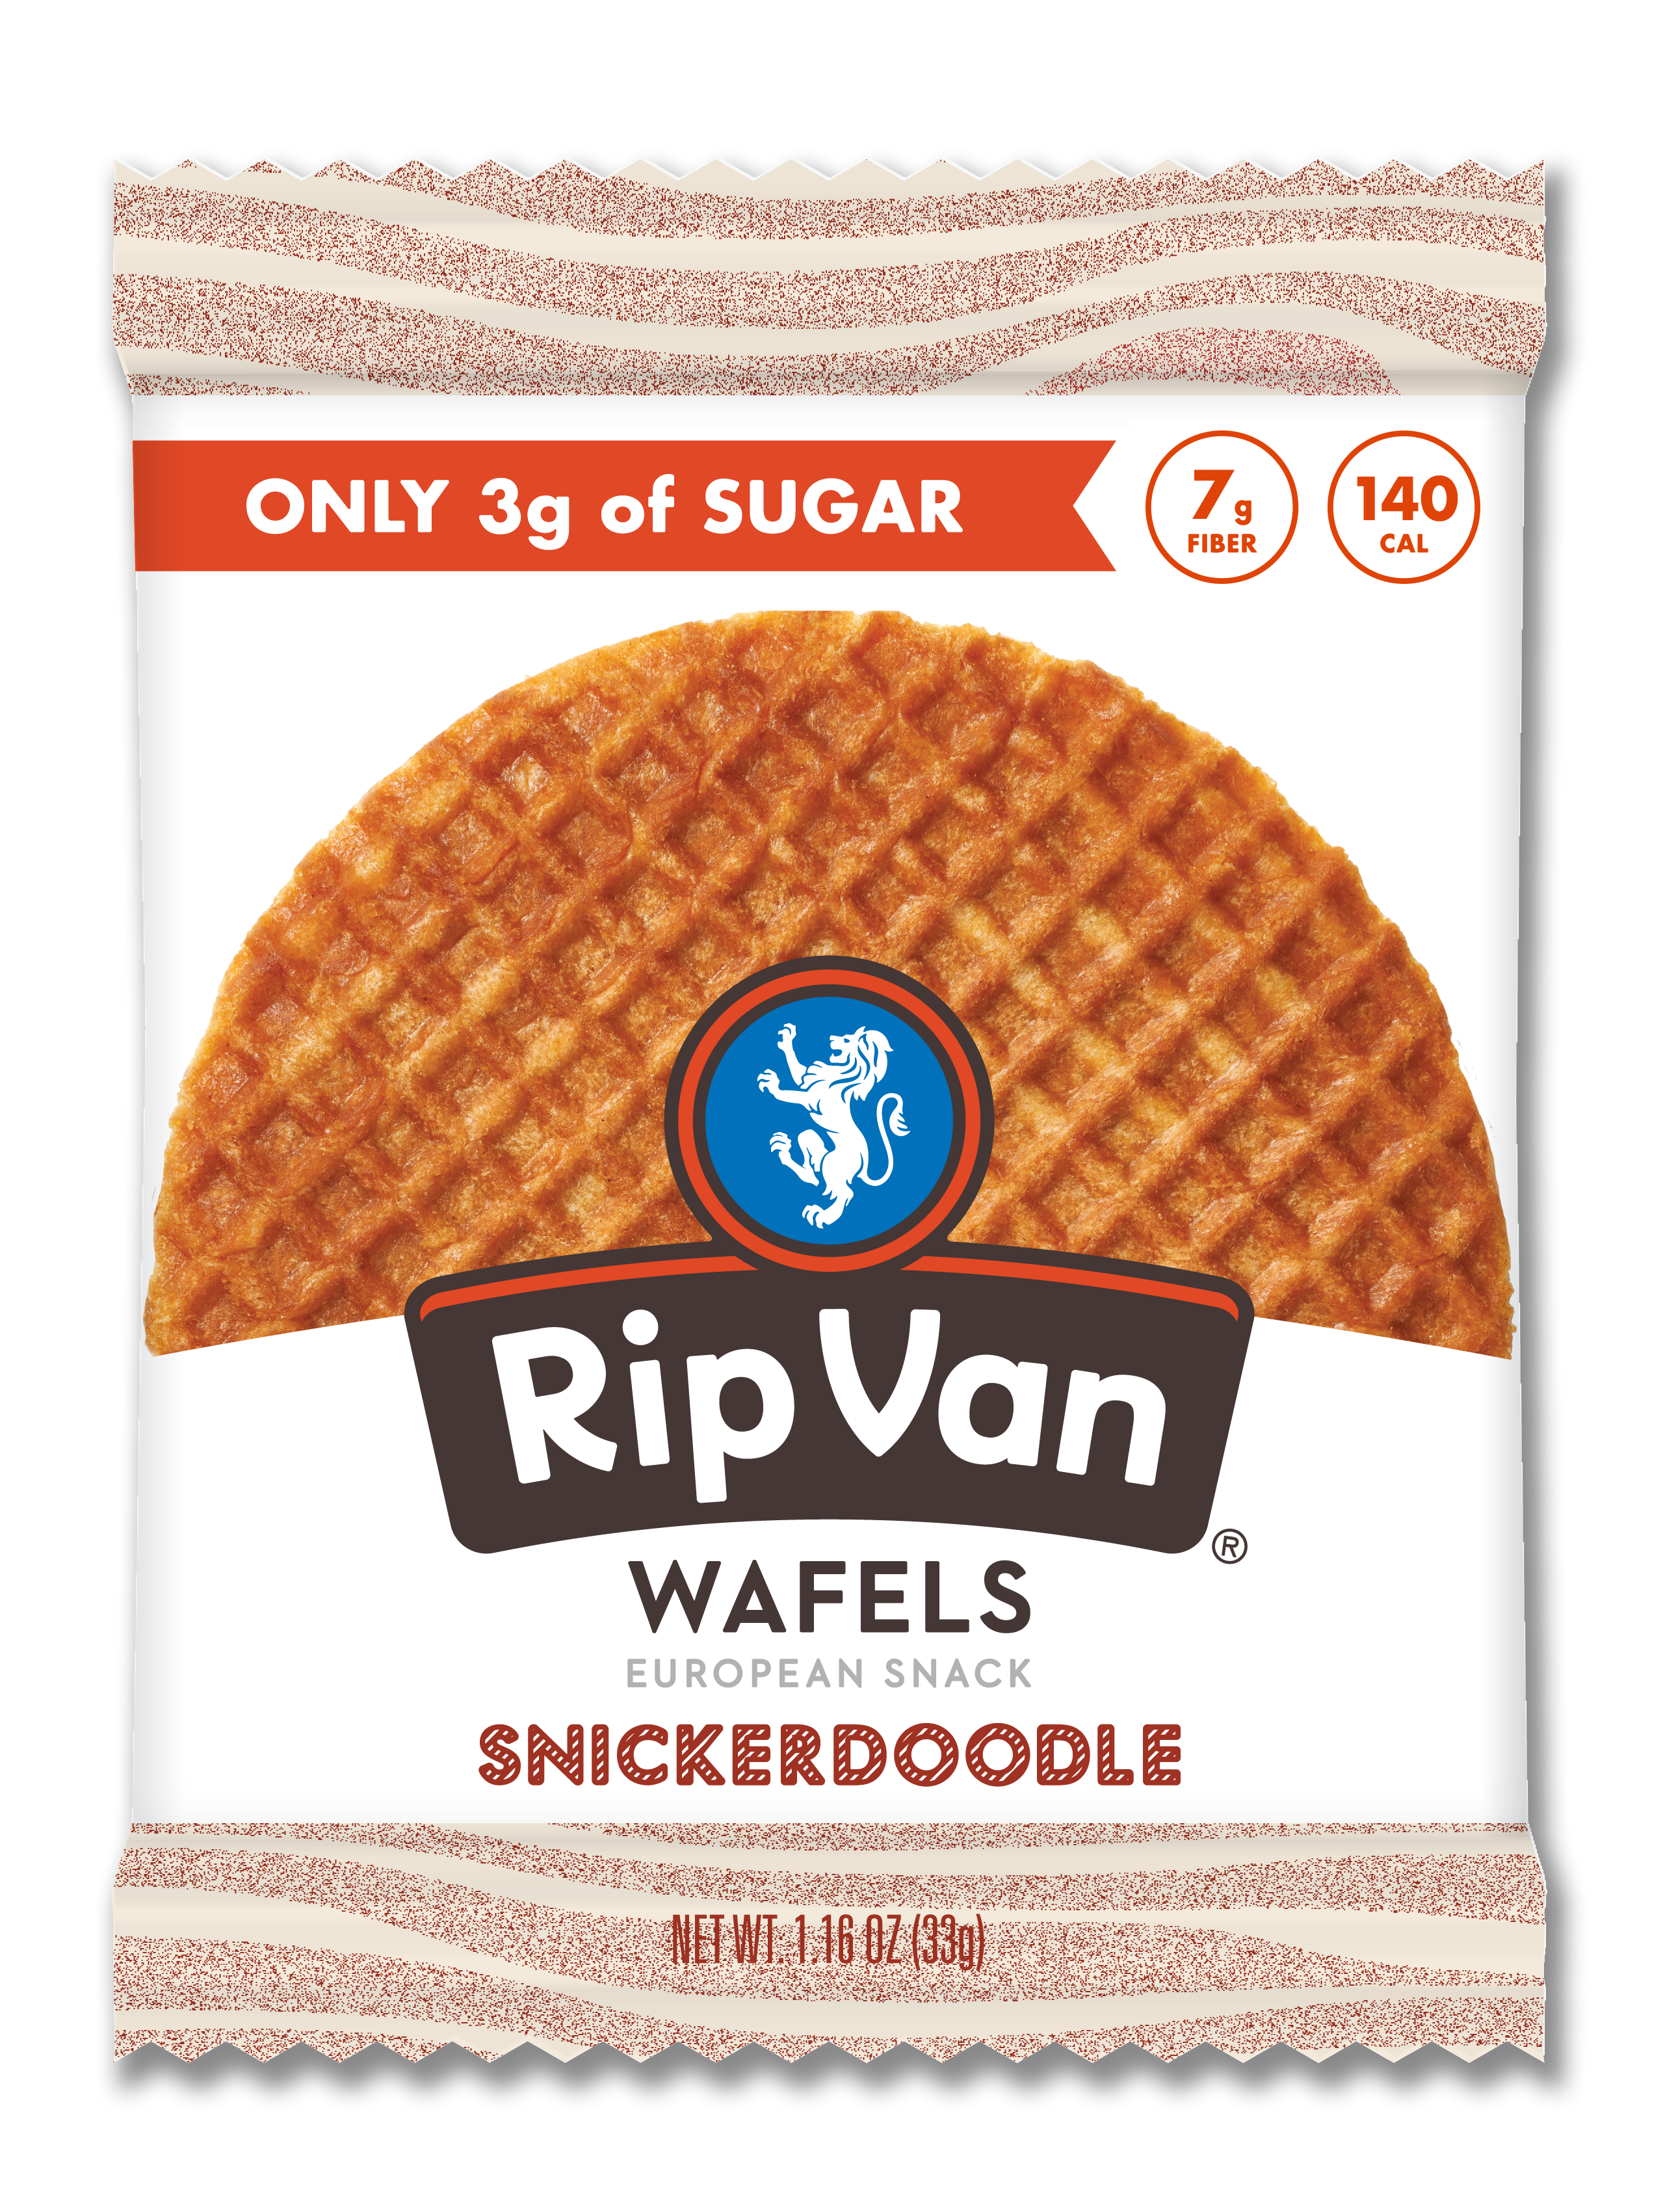 Rip Van Wafels - Low Sugar Singles - Snickerdoodle 4 innerpacks per case 1.2 oz